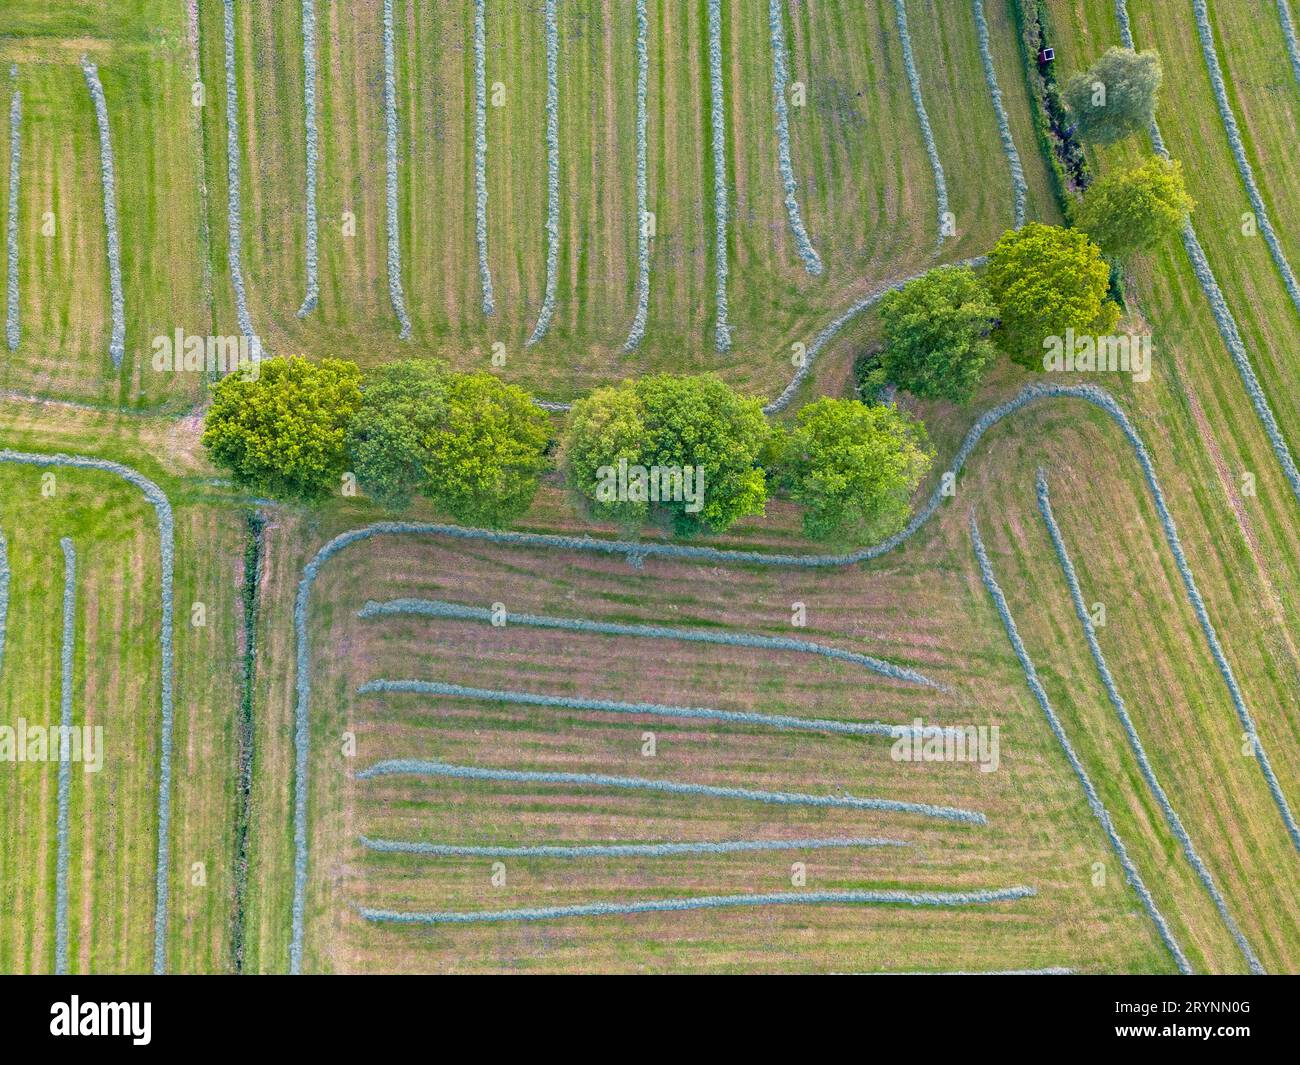 Vue aérienne, vue de dessus de l'herbe verte naturelle et des buissons créant un motif abstrait, photographié par un drone. Banque D'Images